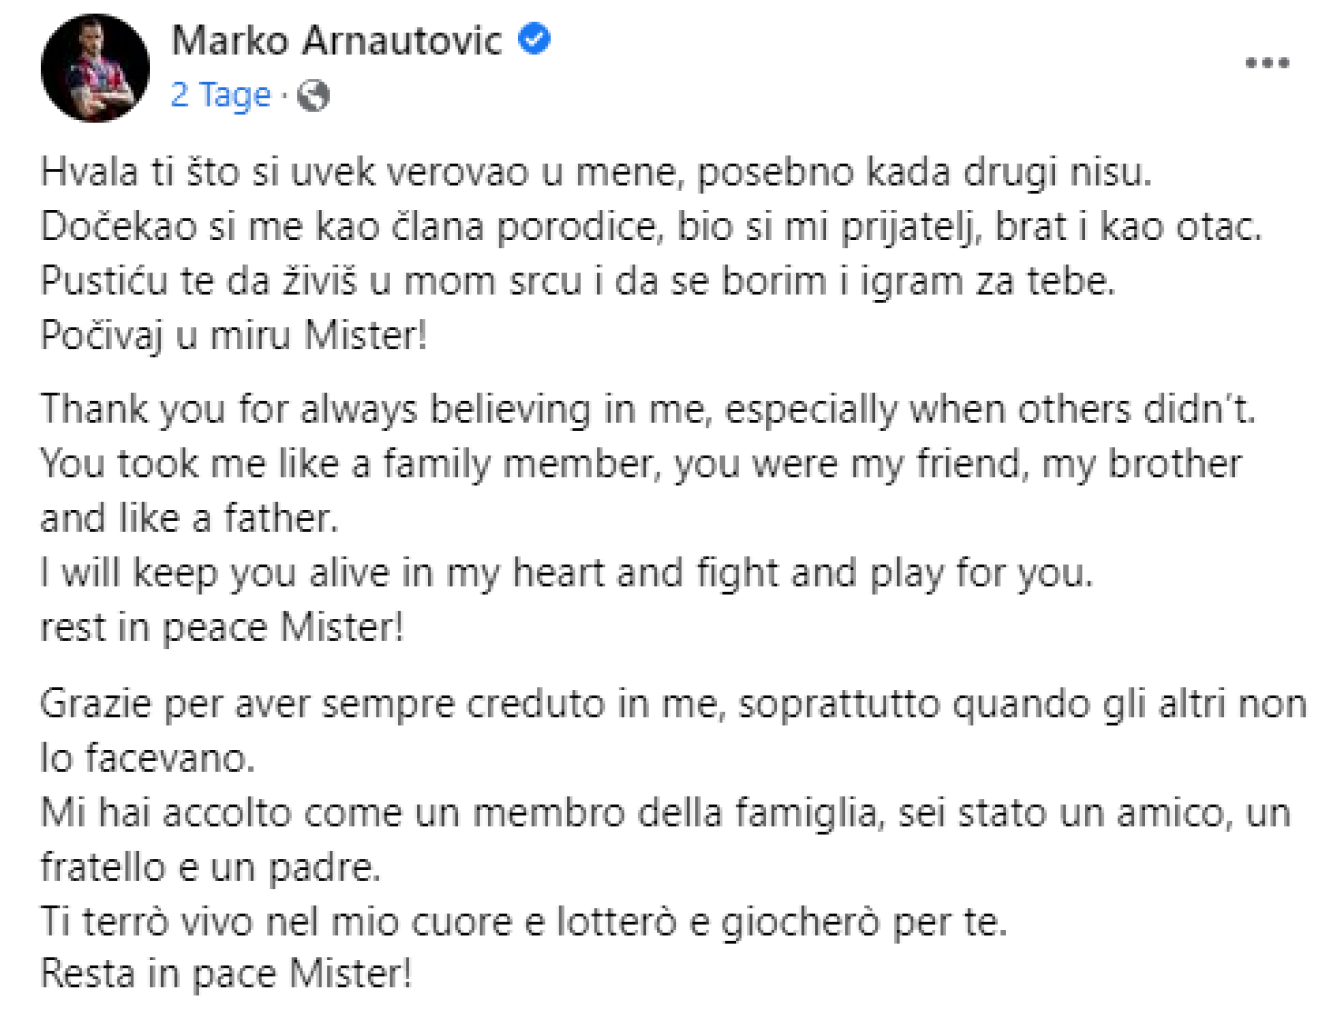 Marko Arnautovic verabschiedet sich von Trainerlegende